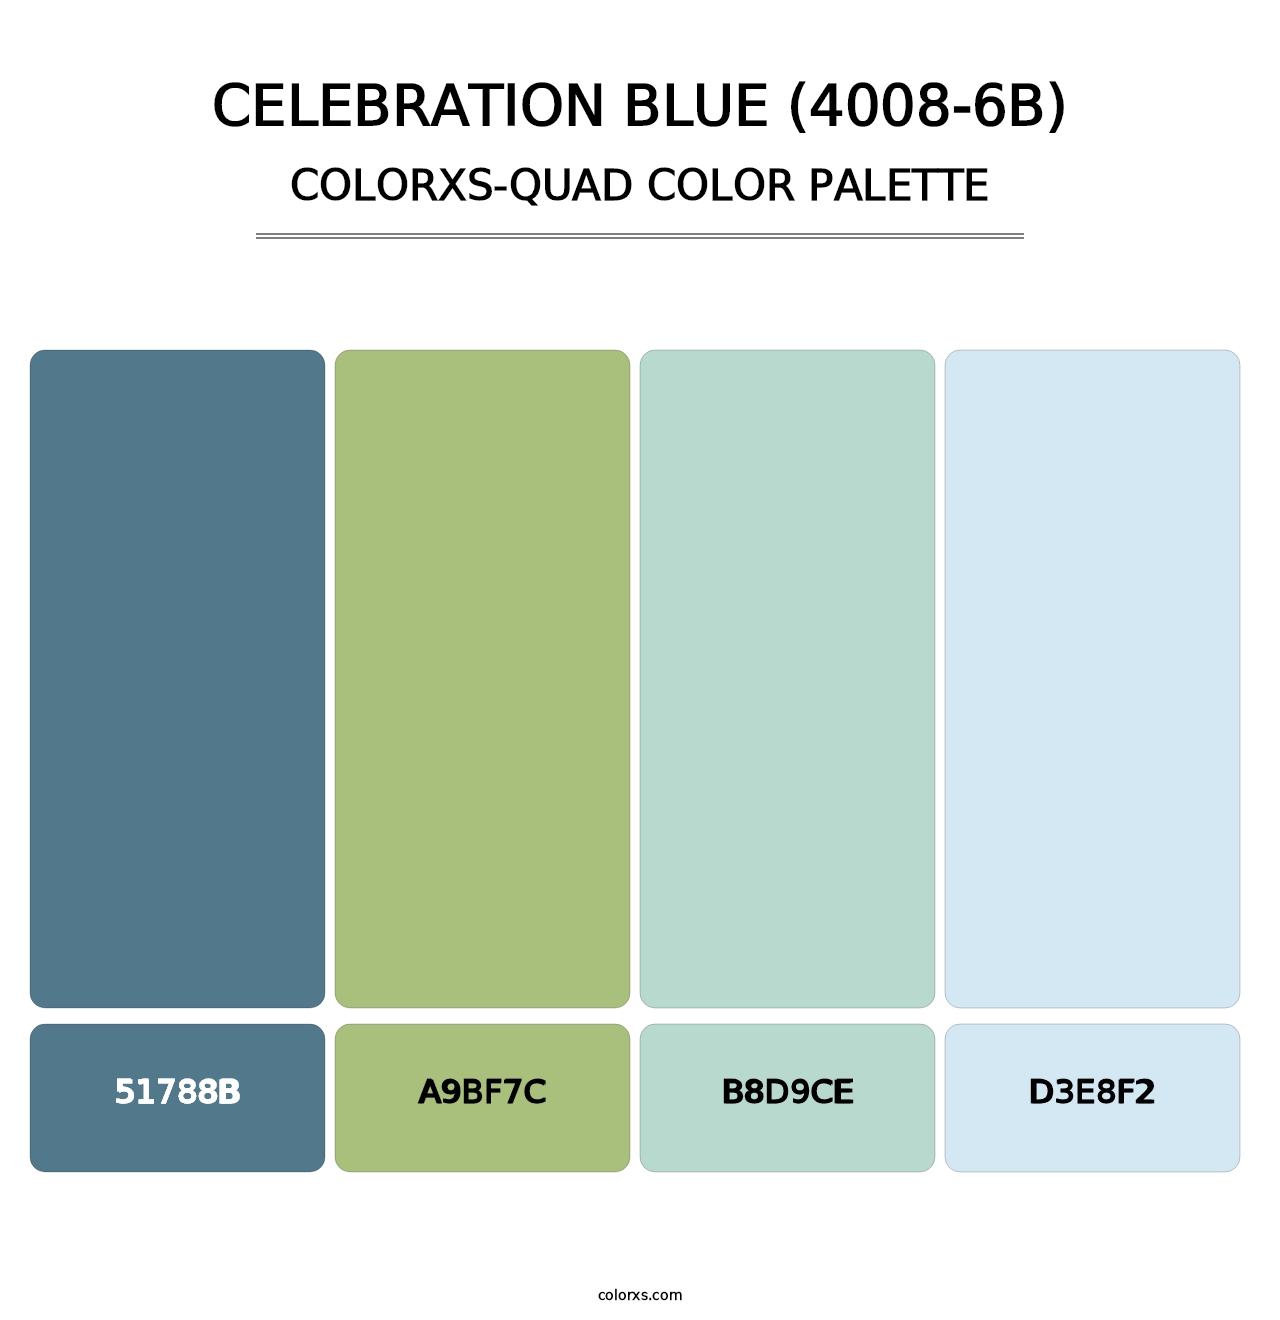 Celebration Blue (4008-6B) - Colorxs Quad Palette